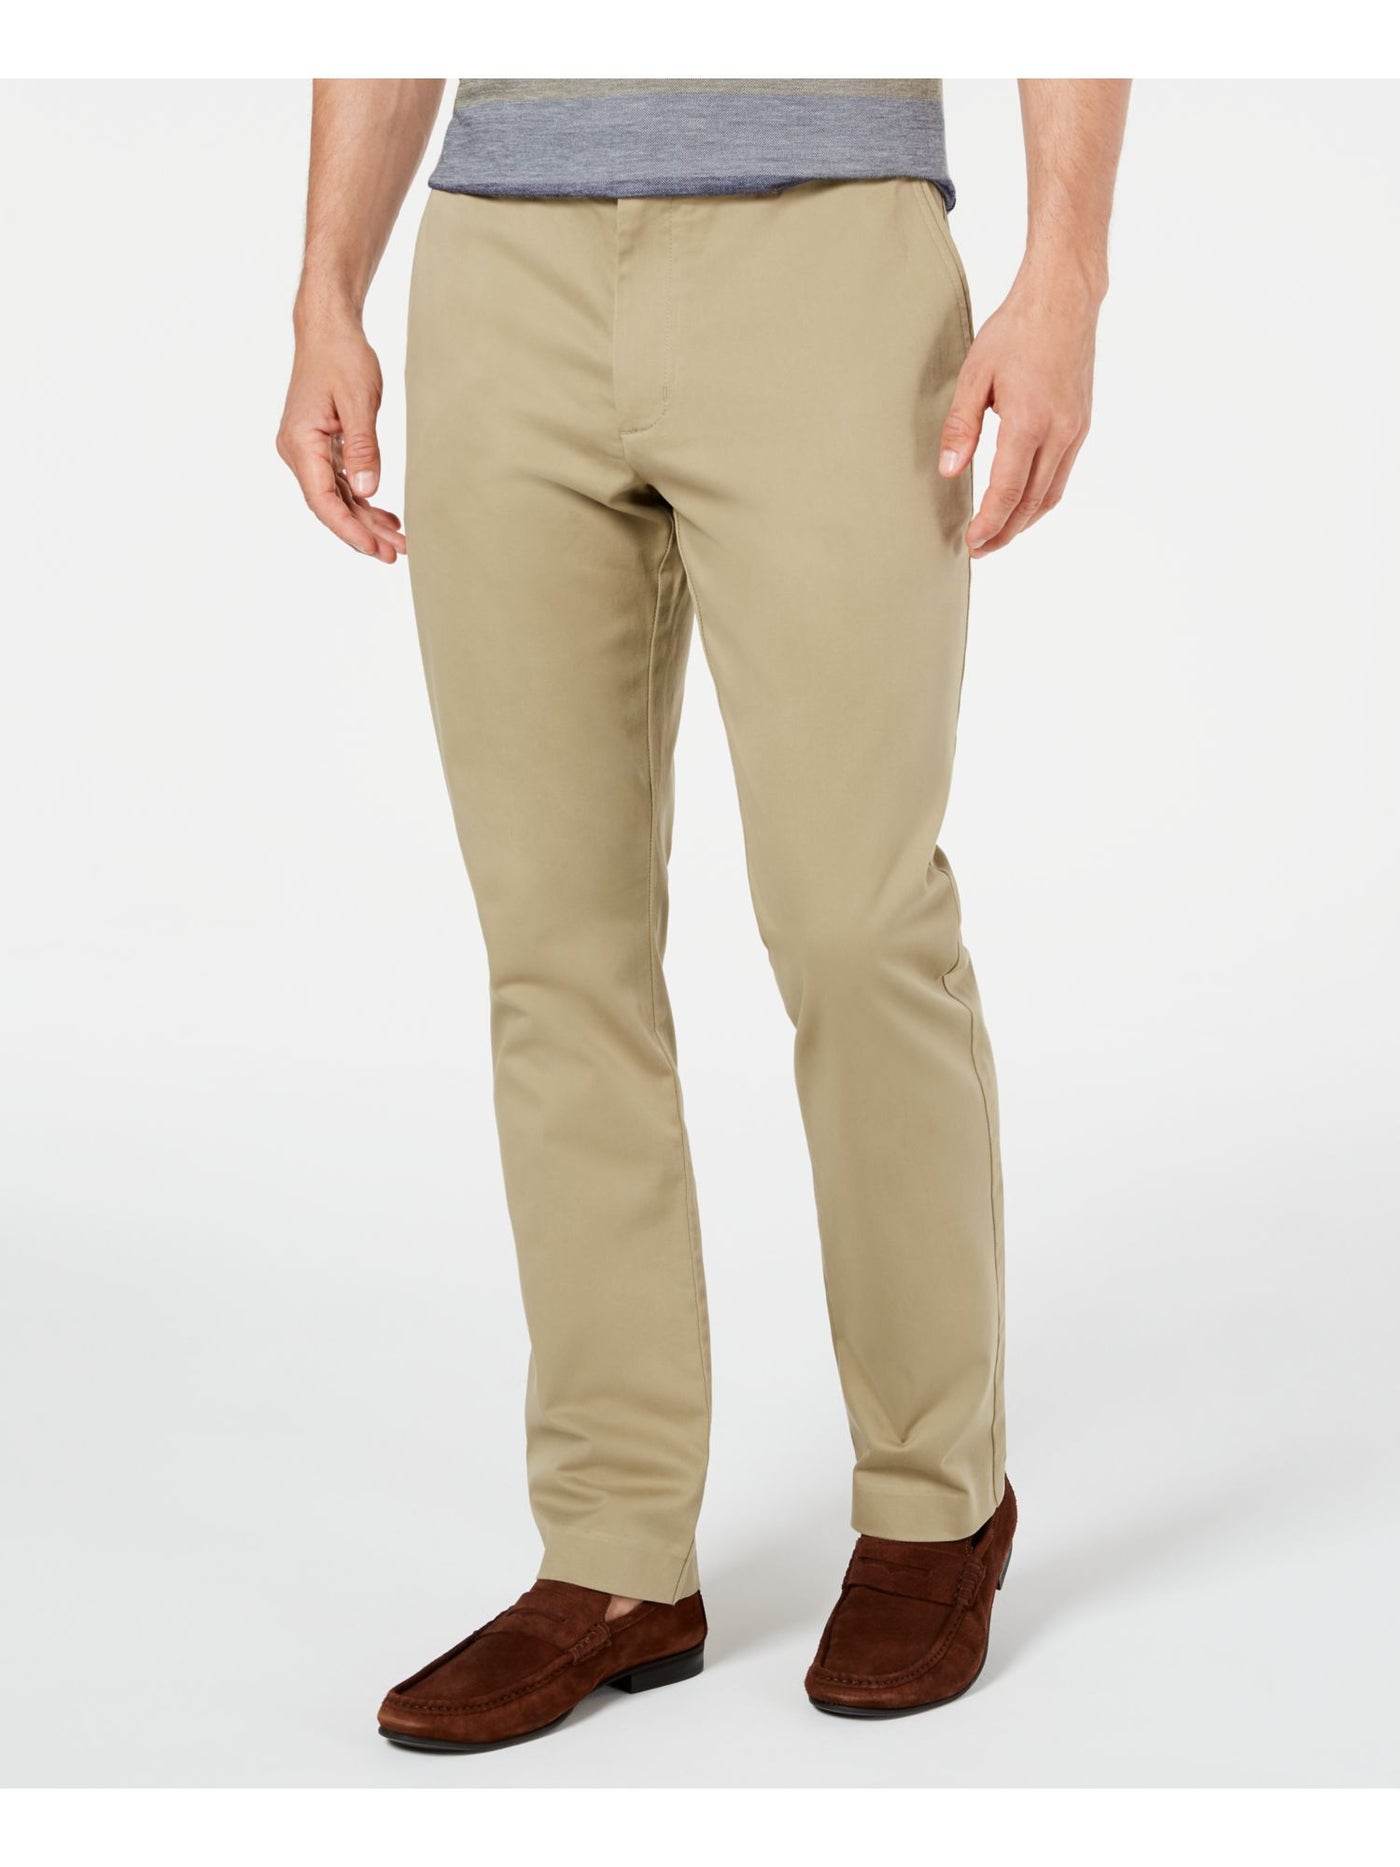 TASSO ELBA Mens Beige Classic Fit Cotton Pants W32/ L32